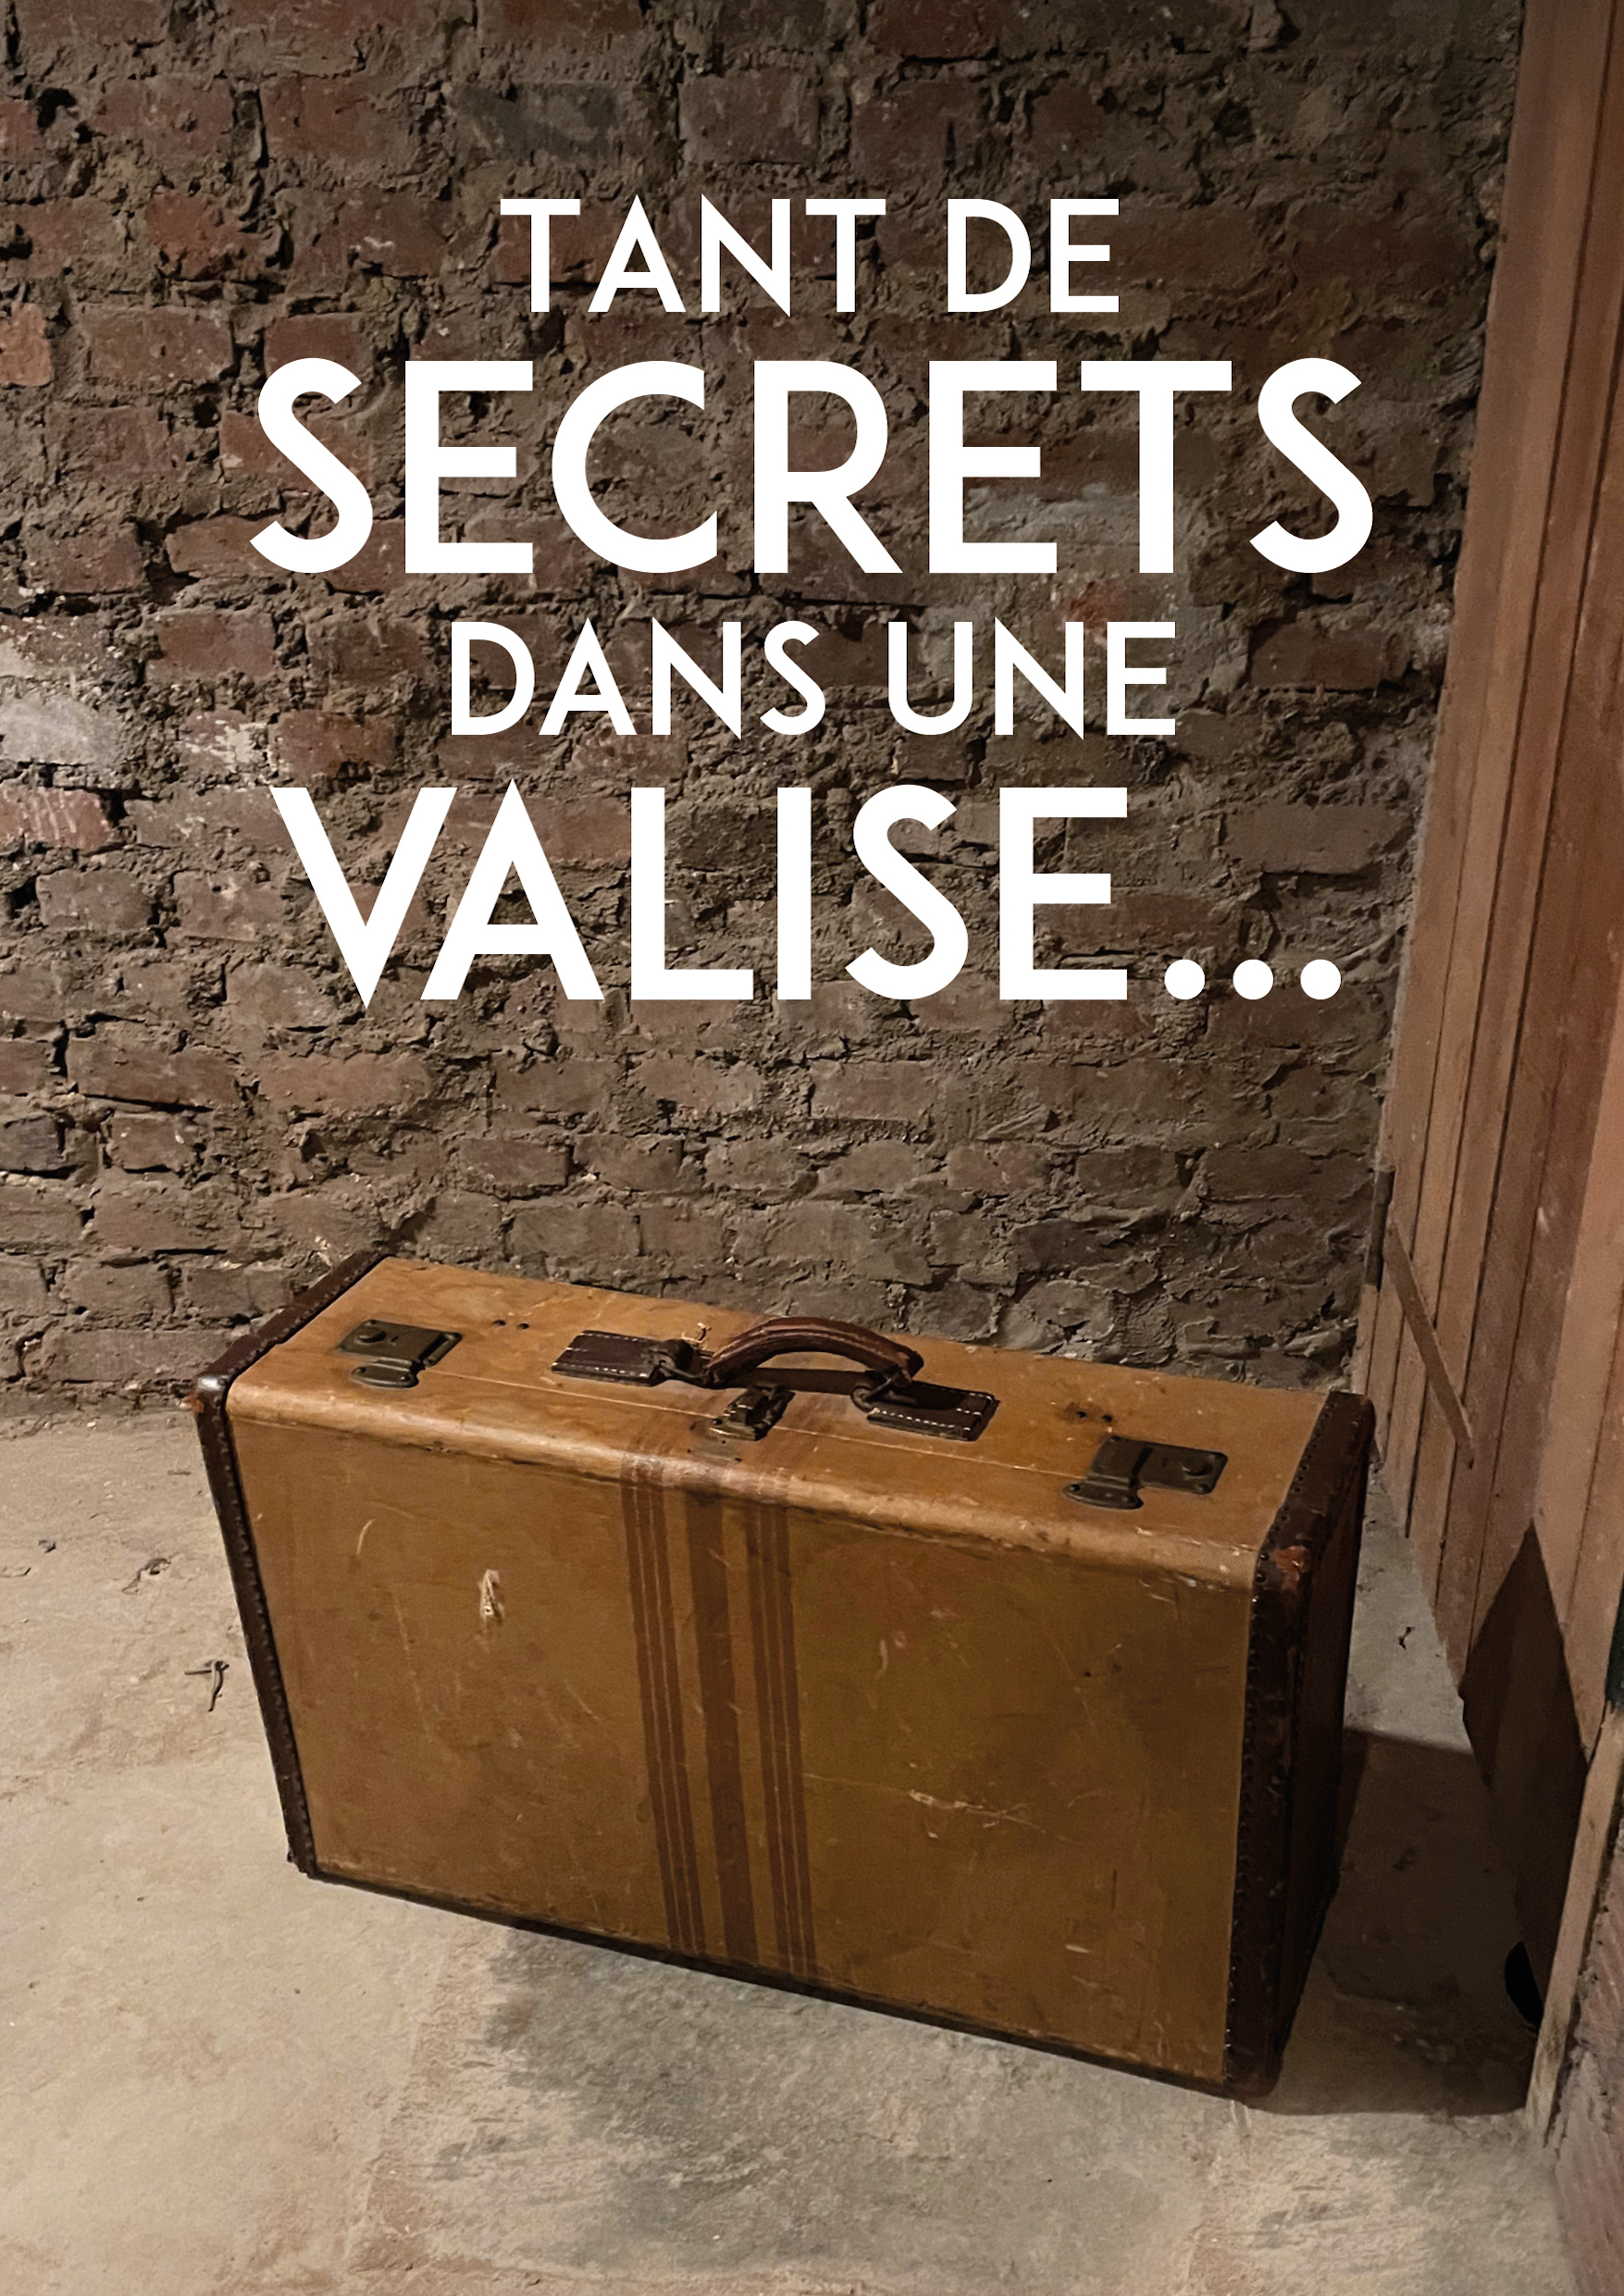 Tant de secrets dans une valise...